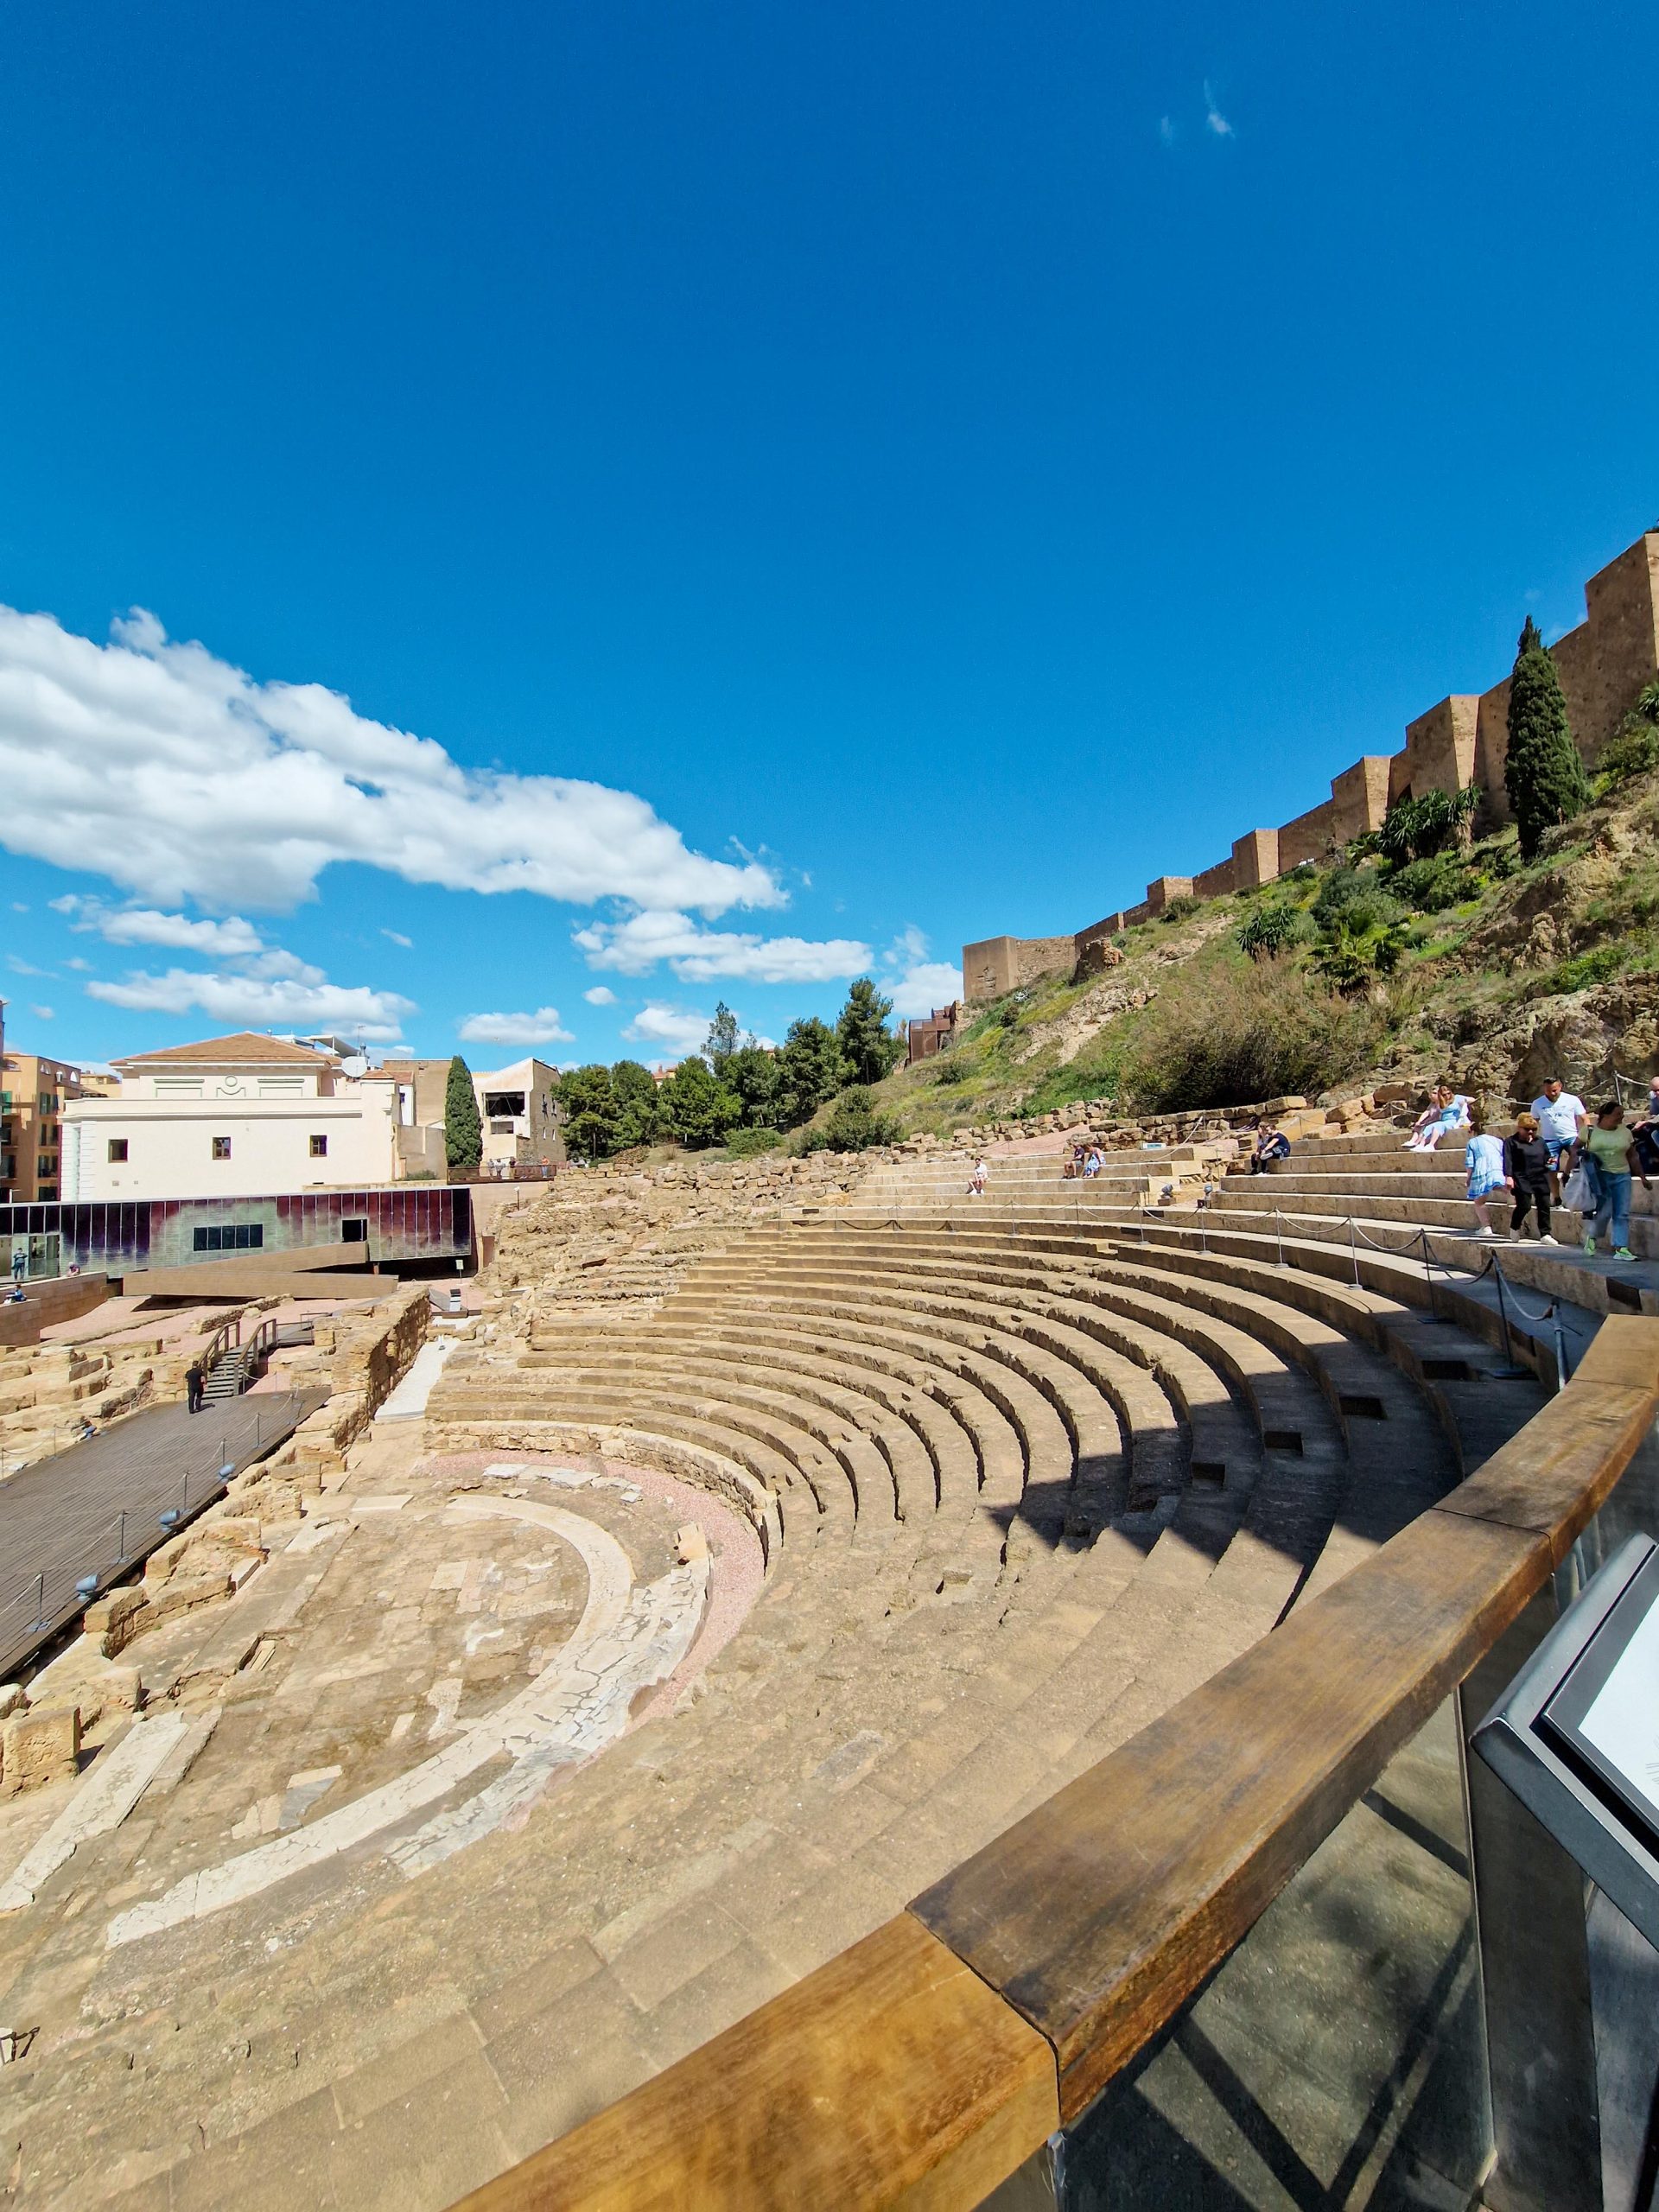 Das Amphitheater gehört zu den bekanntesten Sehenswürdigkeiten der Stadt